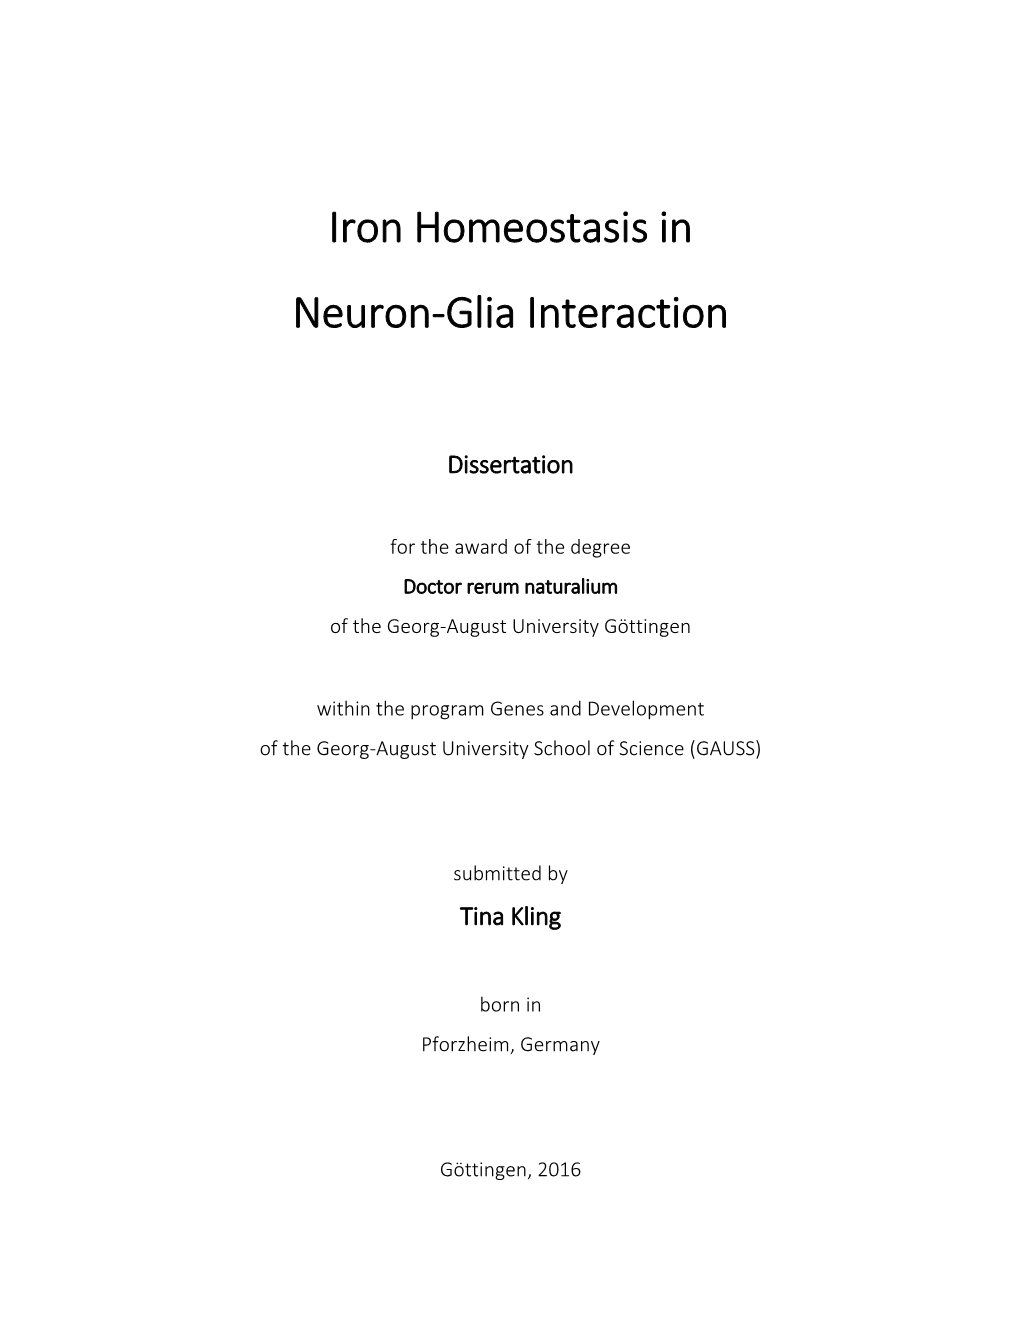 Iron Homeostasis in Neuron-Glia Interaction